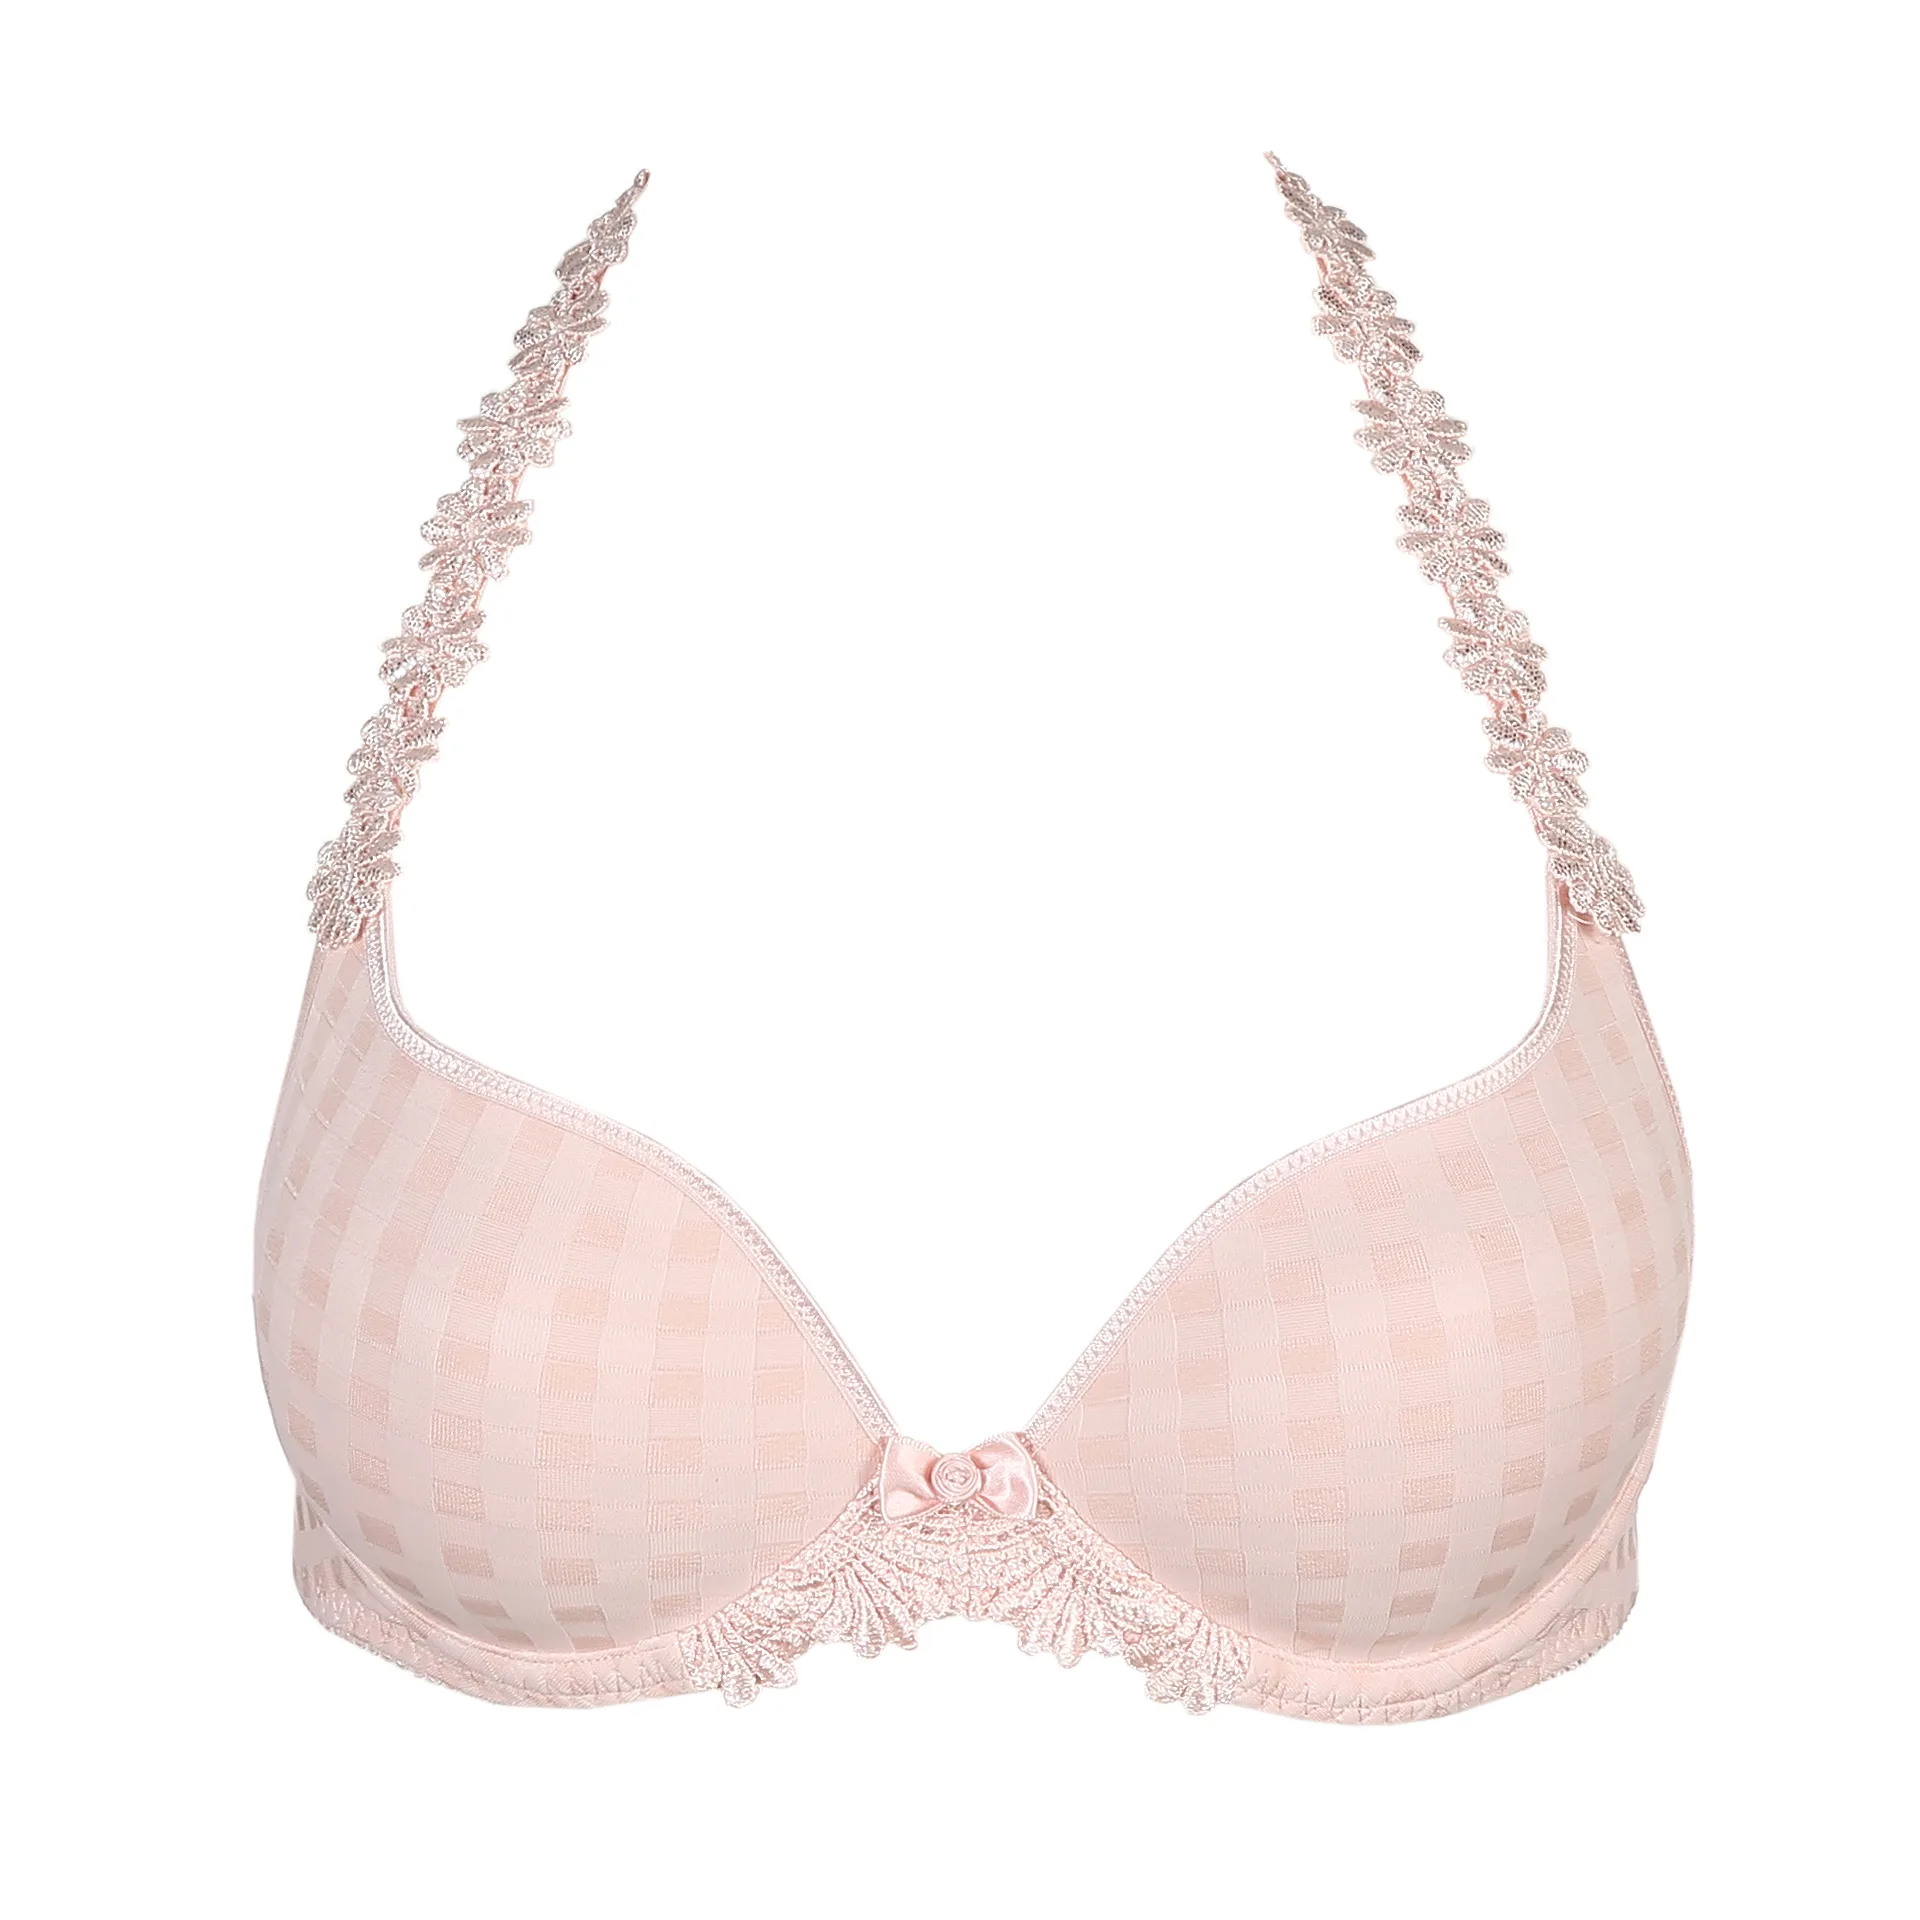 Marie Jo AVERO pearly pink padded bra heartshape